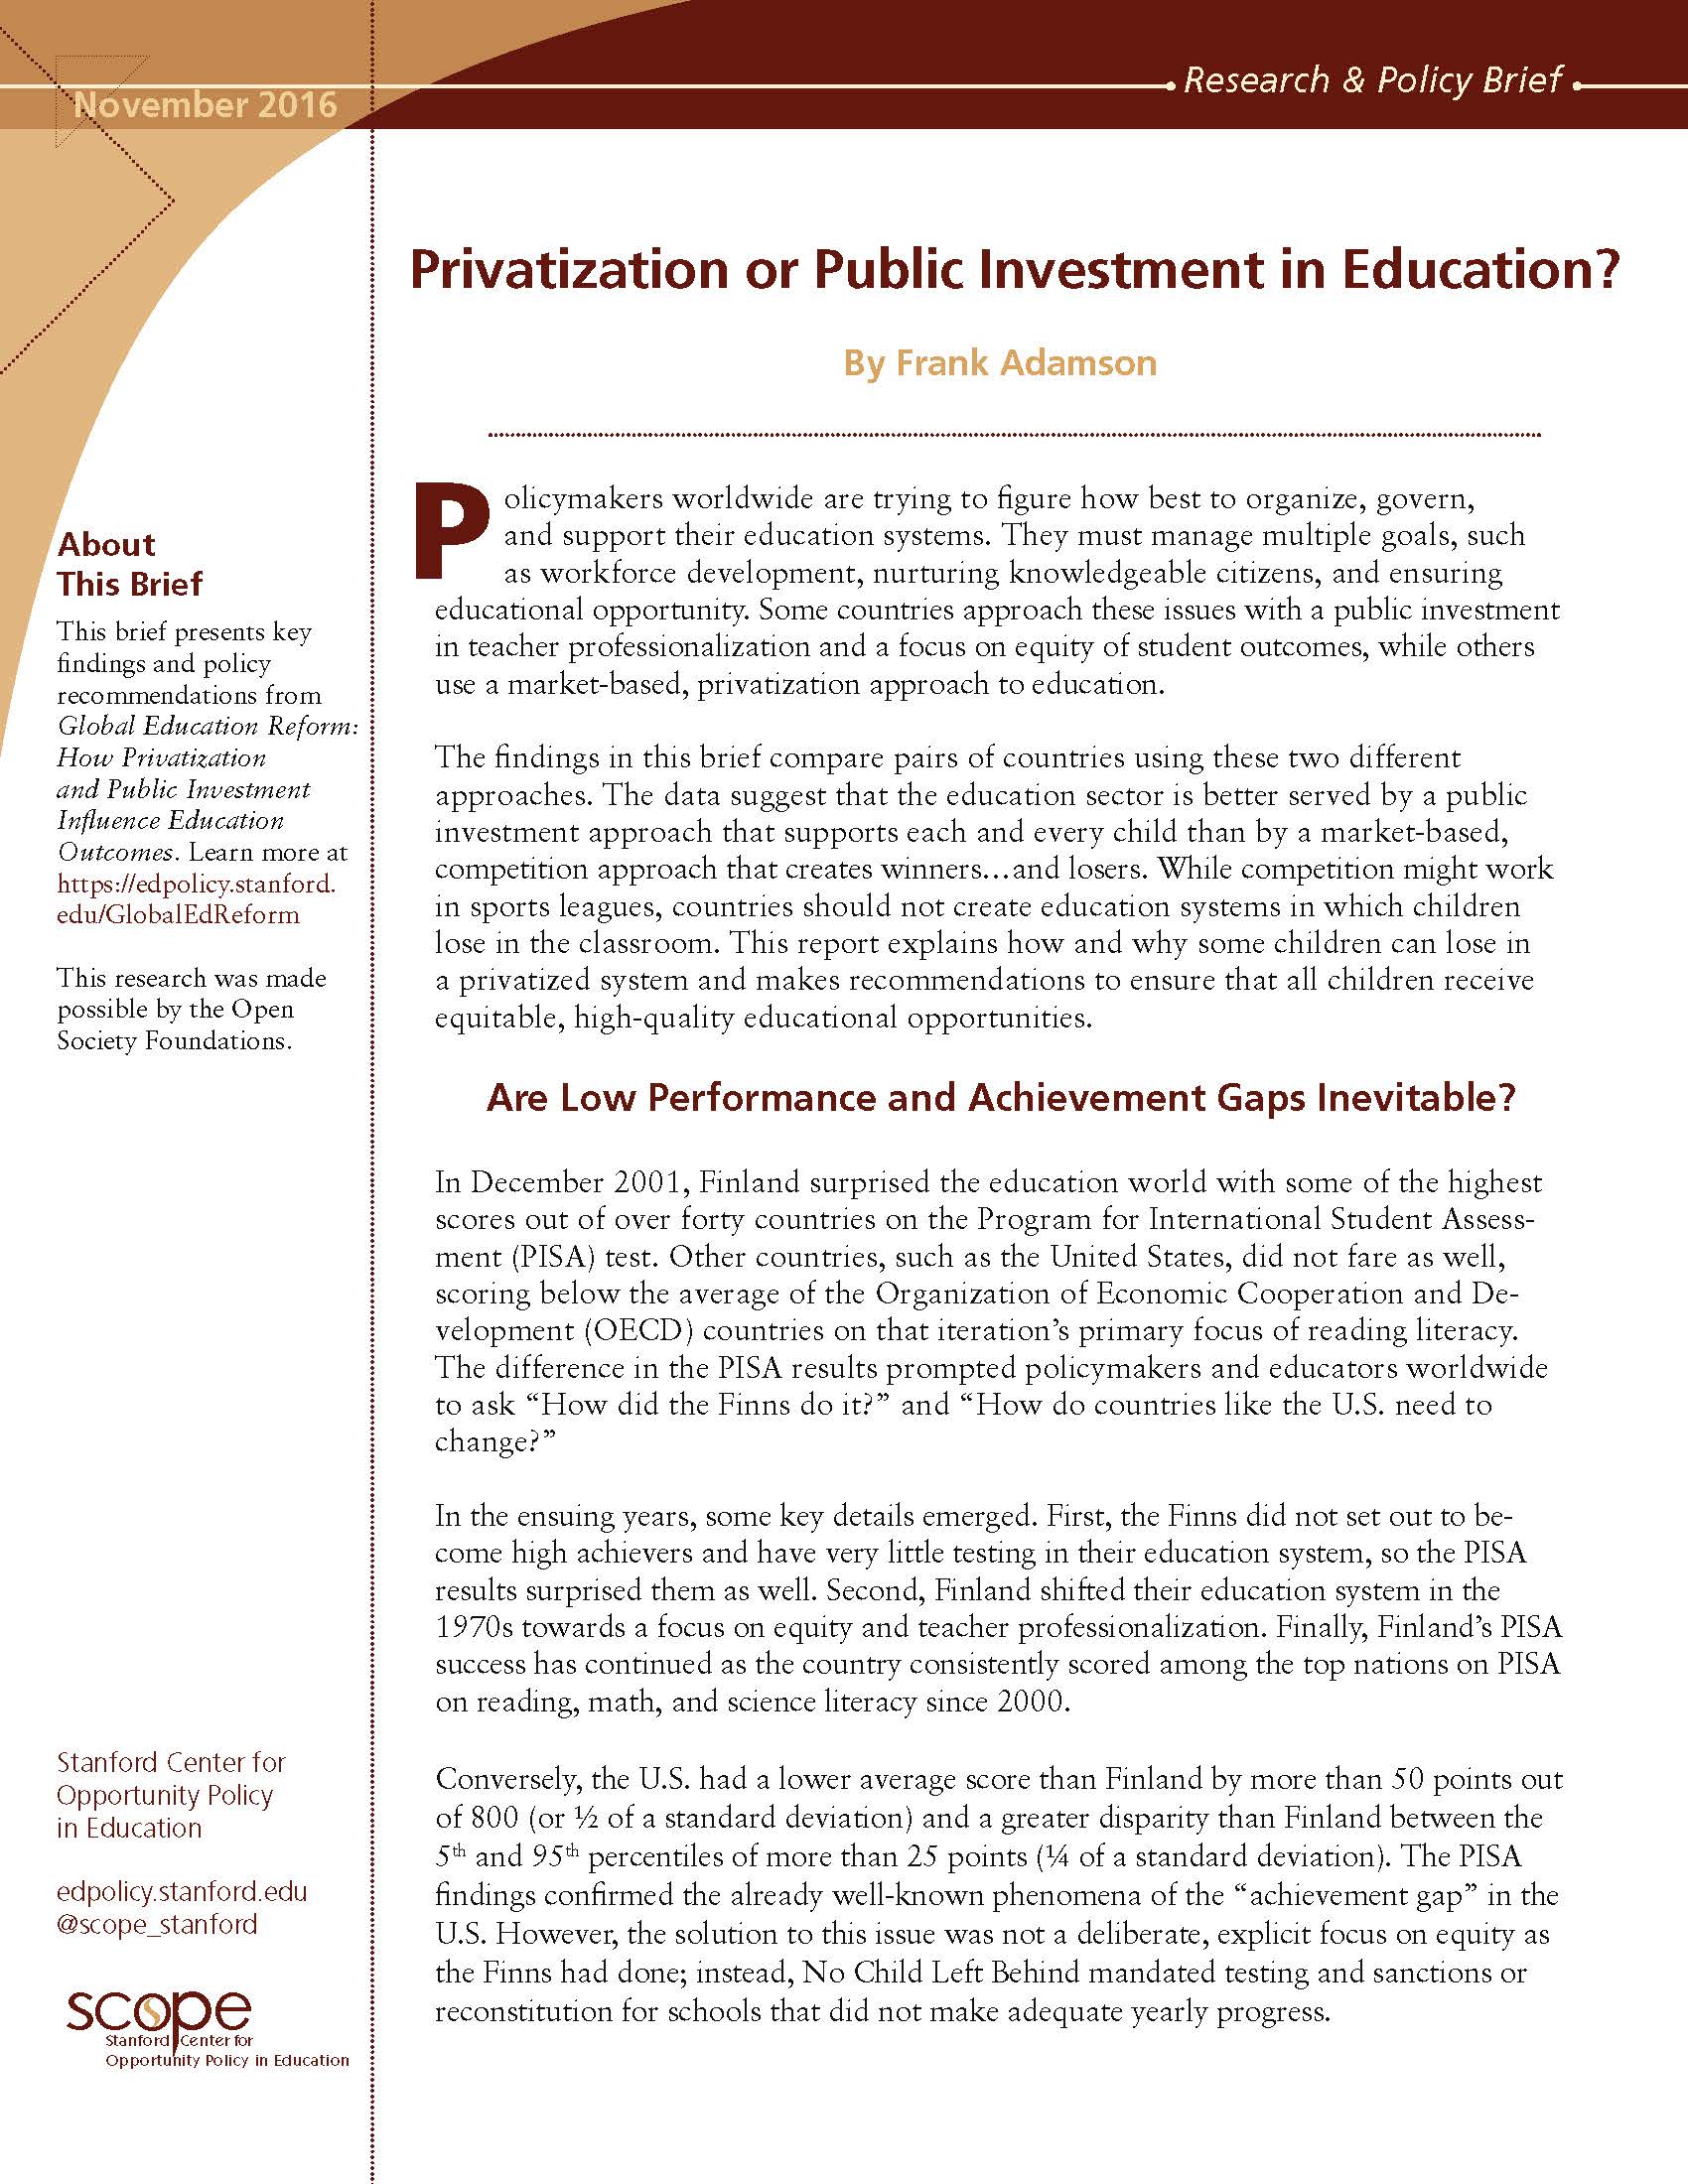 Privatization Brief cover image